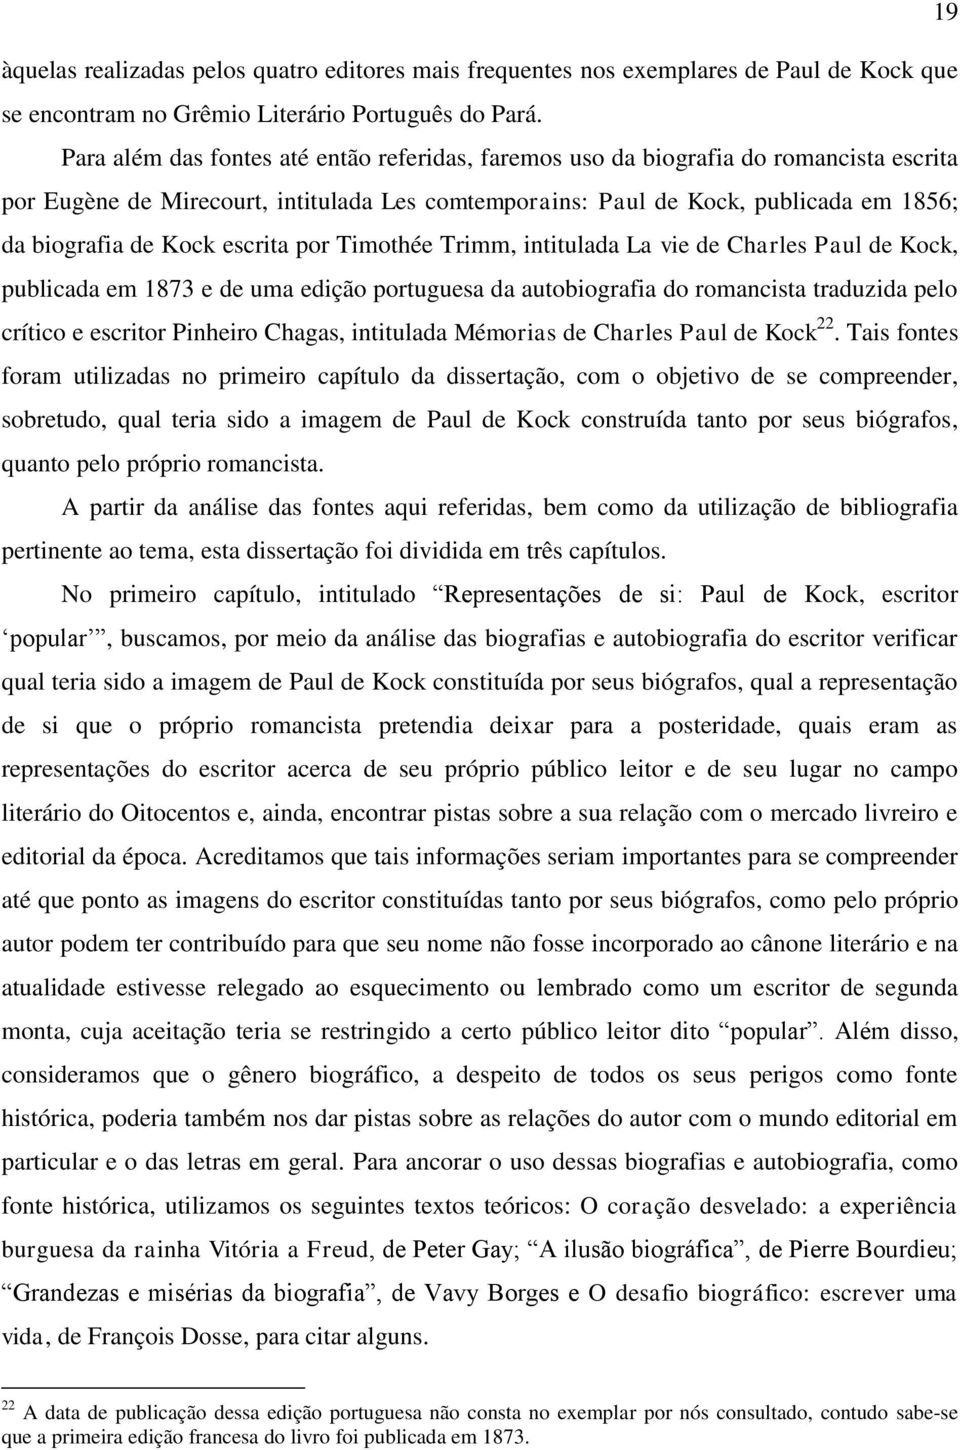 escrita por Timothée Trimm, intitulada La vie de Charles Paul de Kock, publicada em 1873 e de uma edição portuguesa da autobiografia do romancista traduzida pelo crítico e escritor Pinheiro Chagas,